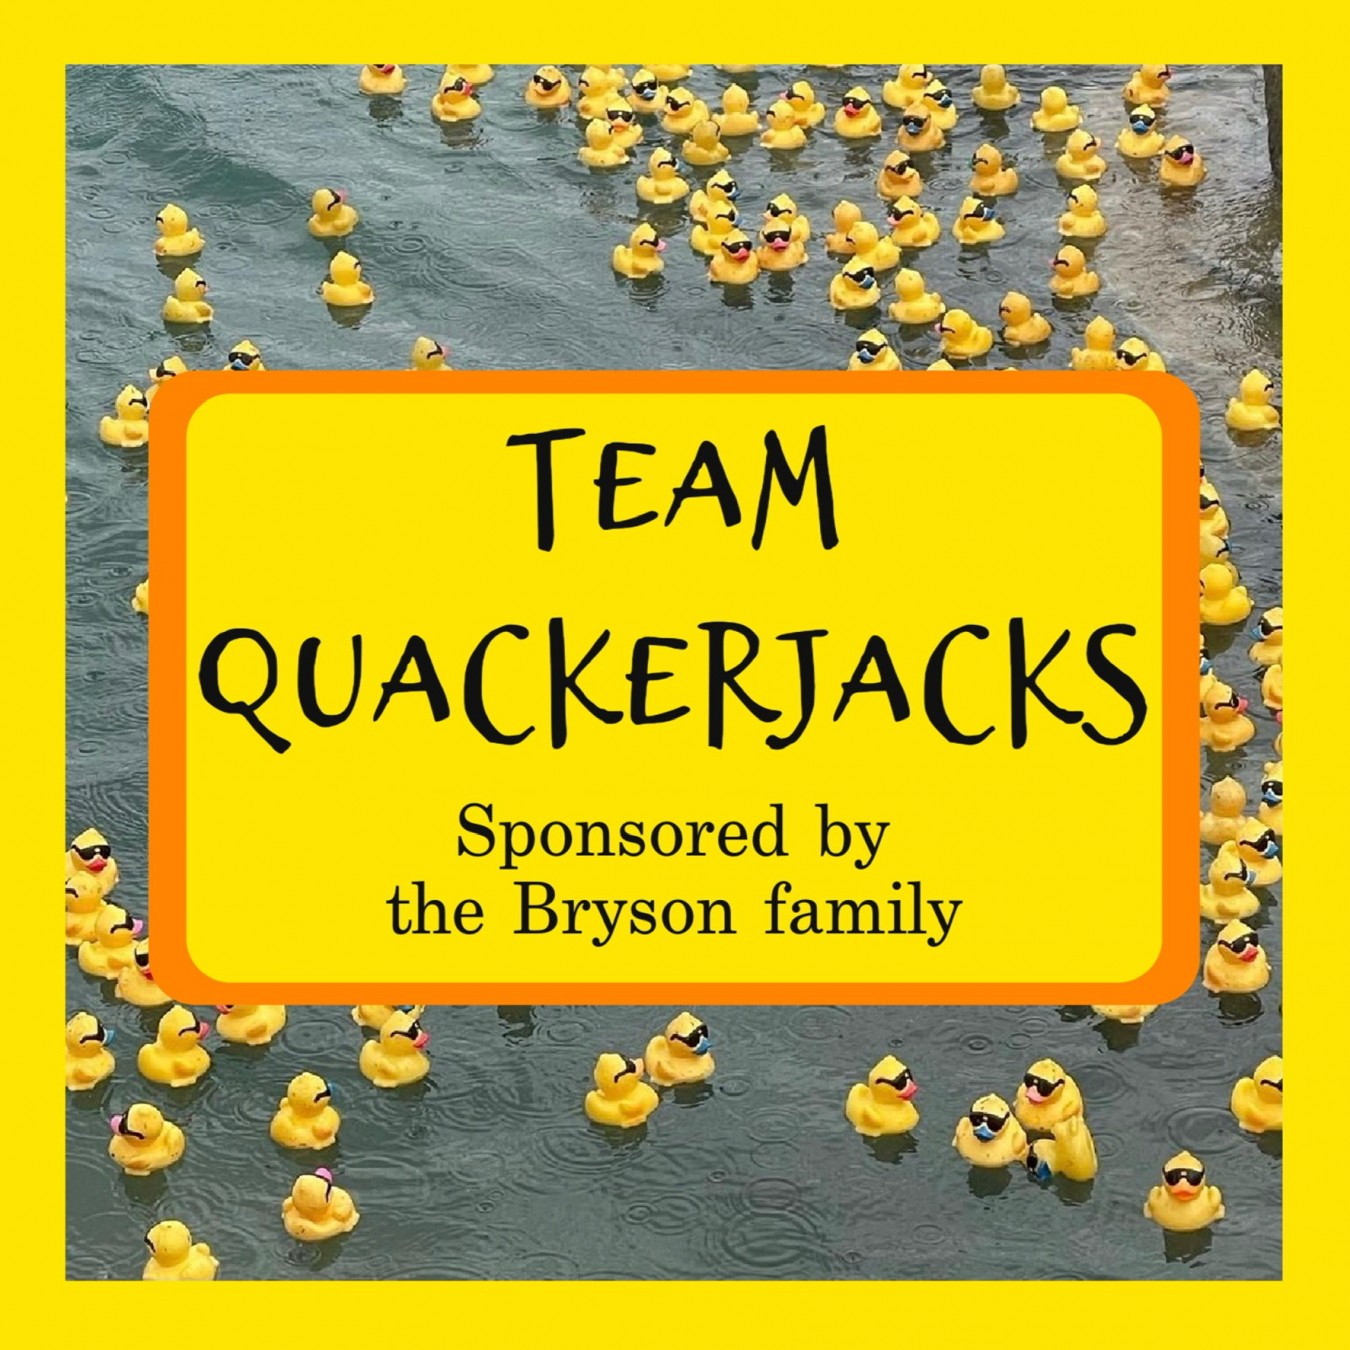 Quackerjacks